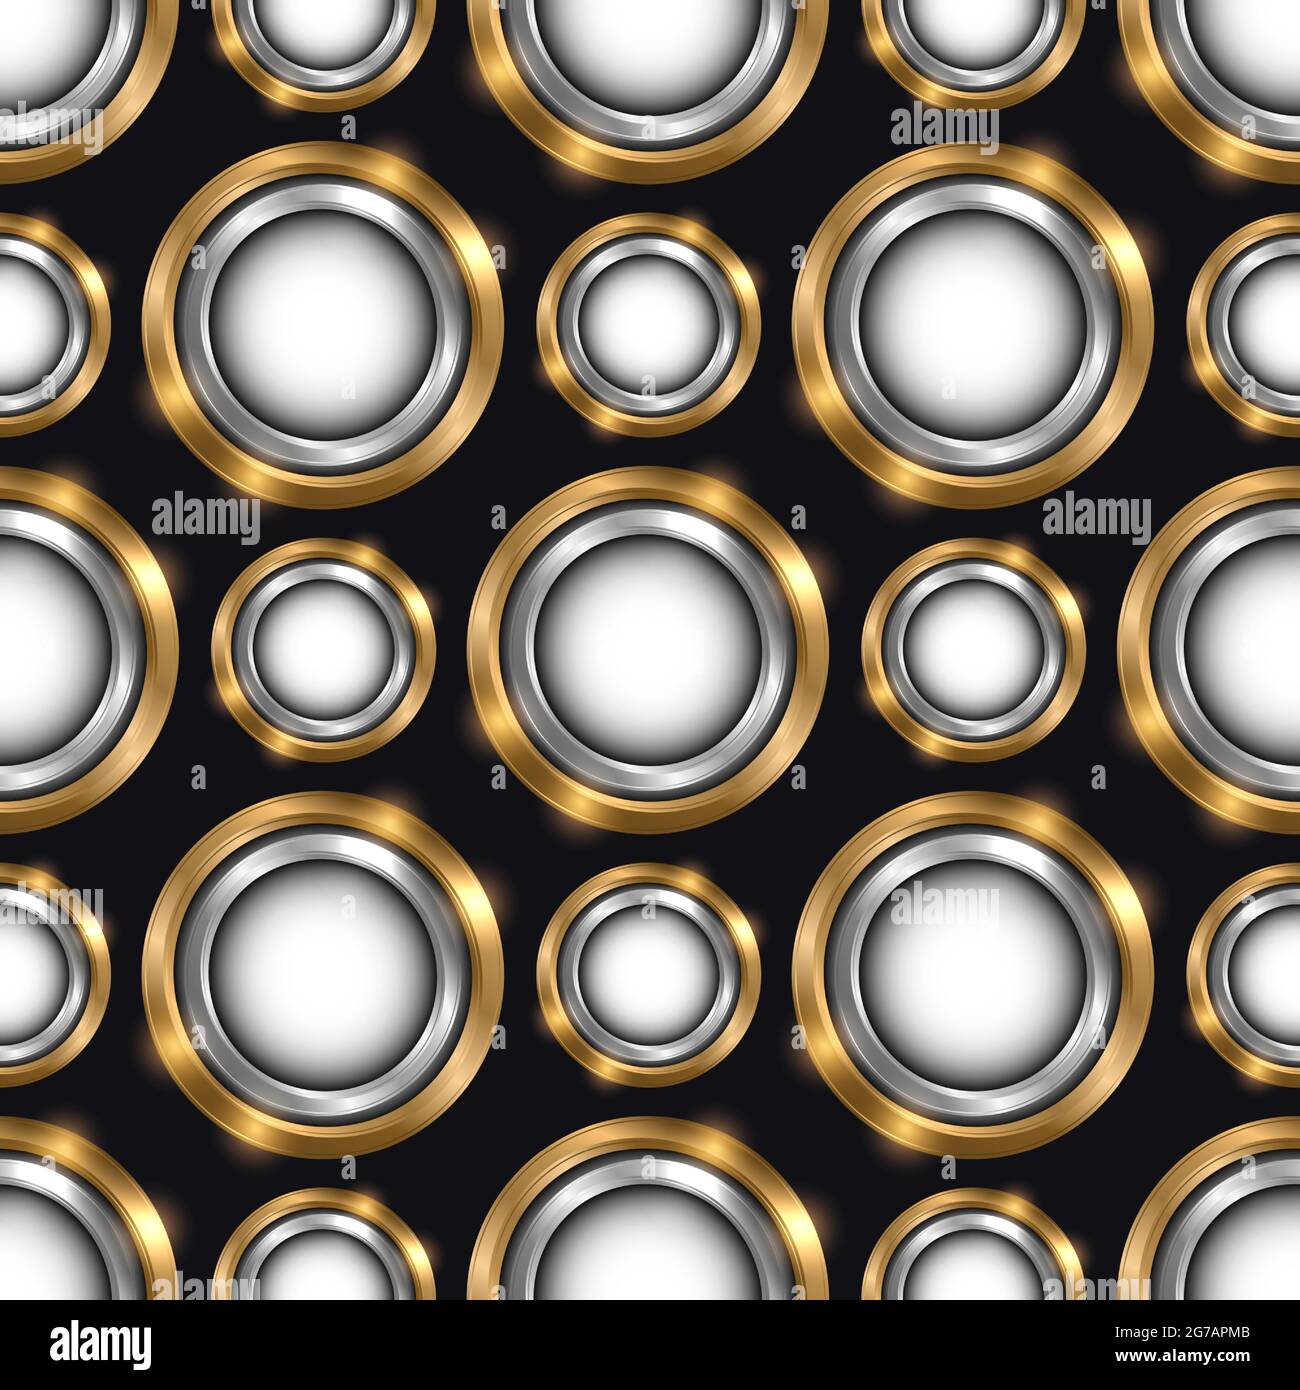 Luxus nahtlose Muster mit Schmuck Gold und Silber Kreise auf schwarzem Vektor-Hintergrund. Abstraktes geometrisches Kreismuster. Elegantes Silber Stock Vektor